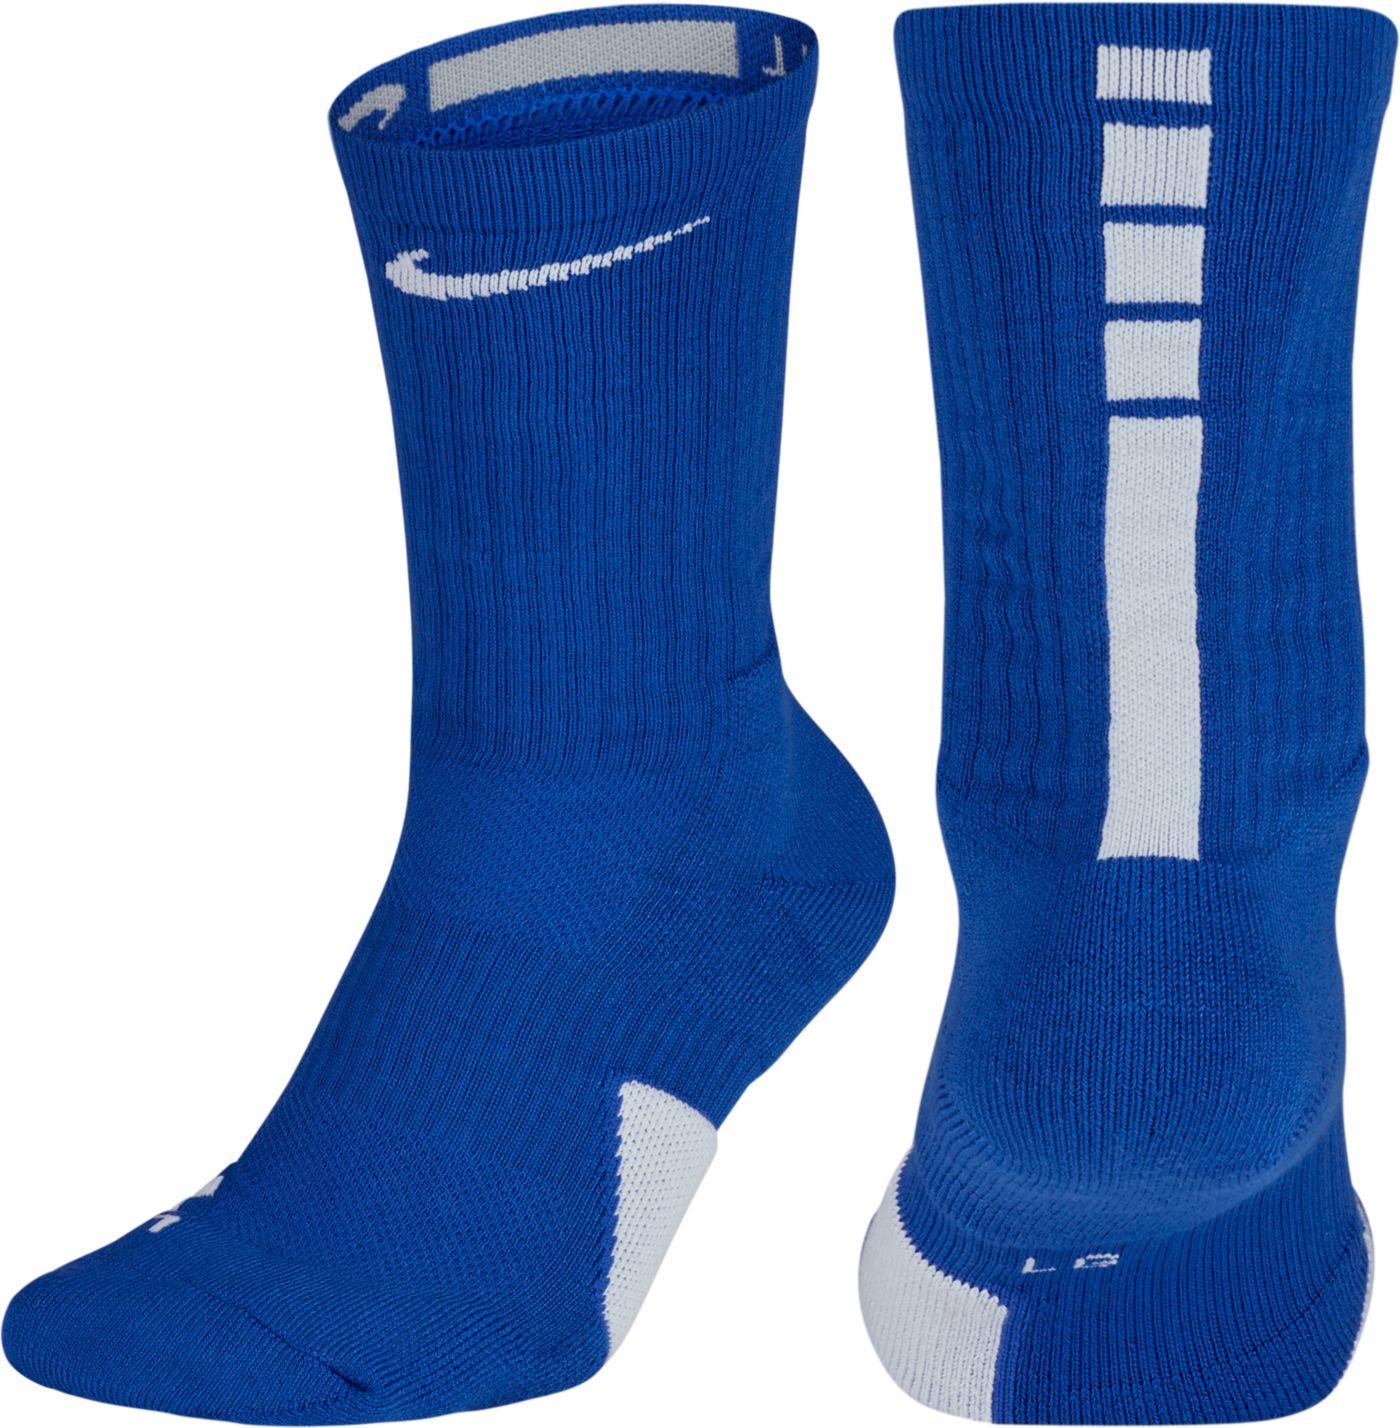 Nike Elite Basketball Crew Socks | DICK'S Sporting Goods